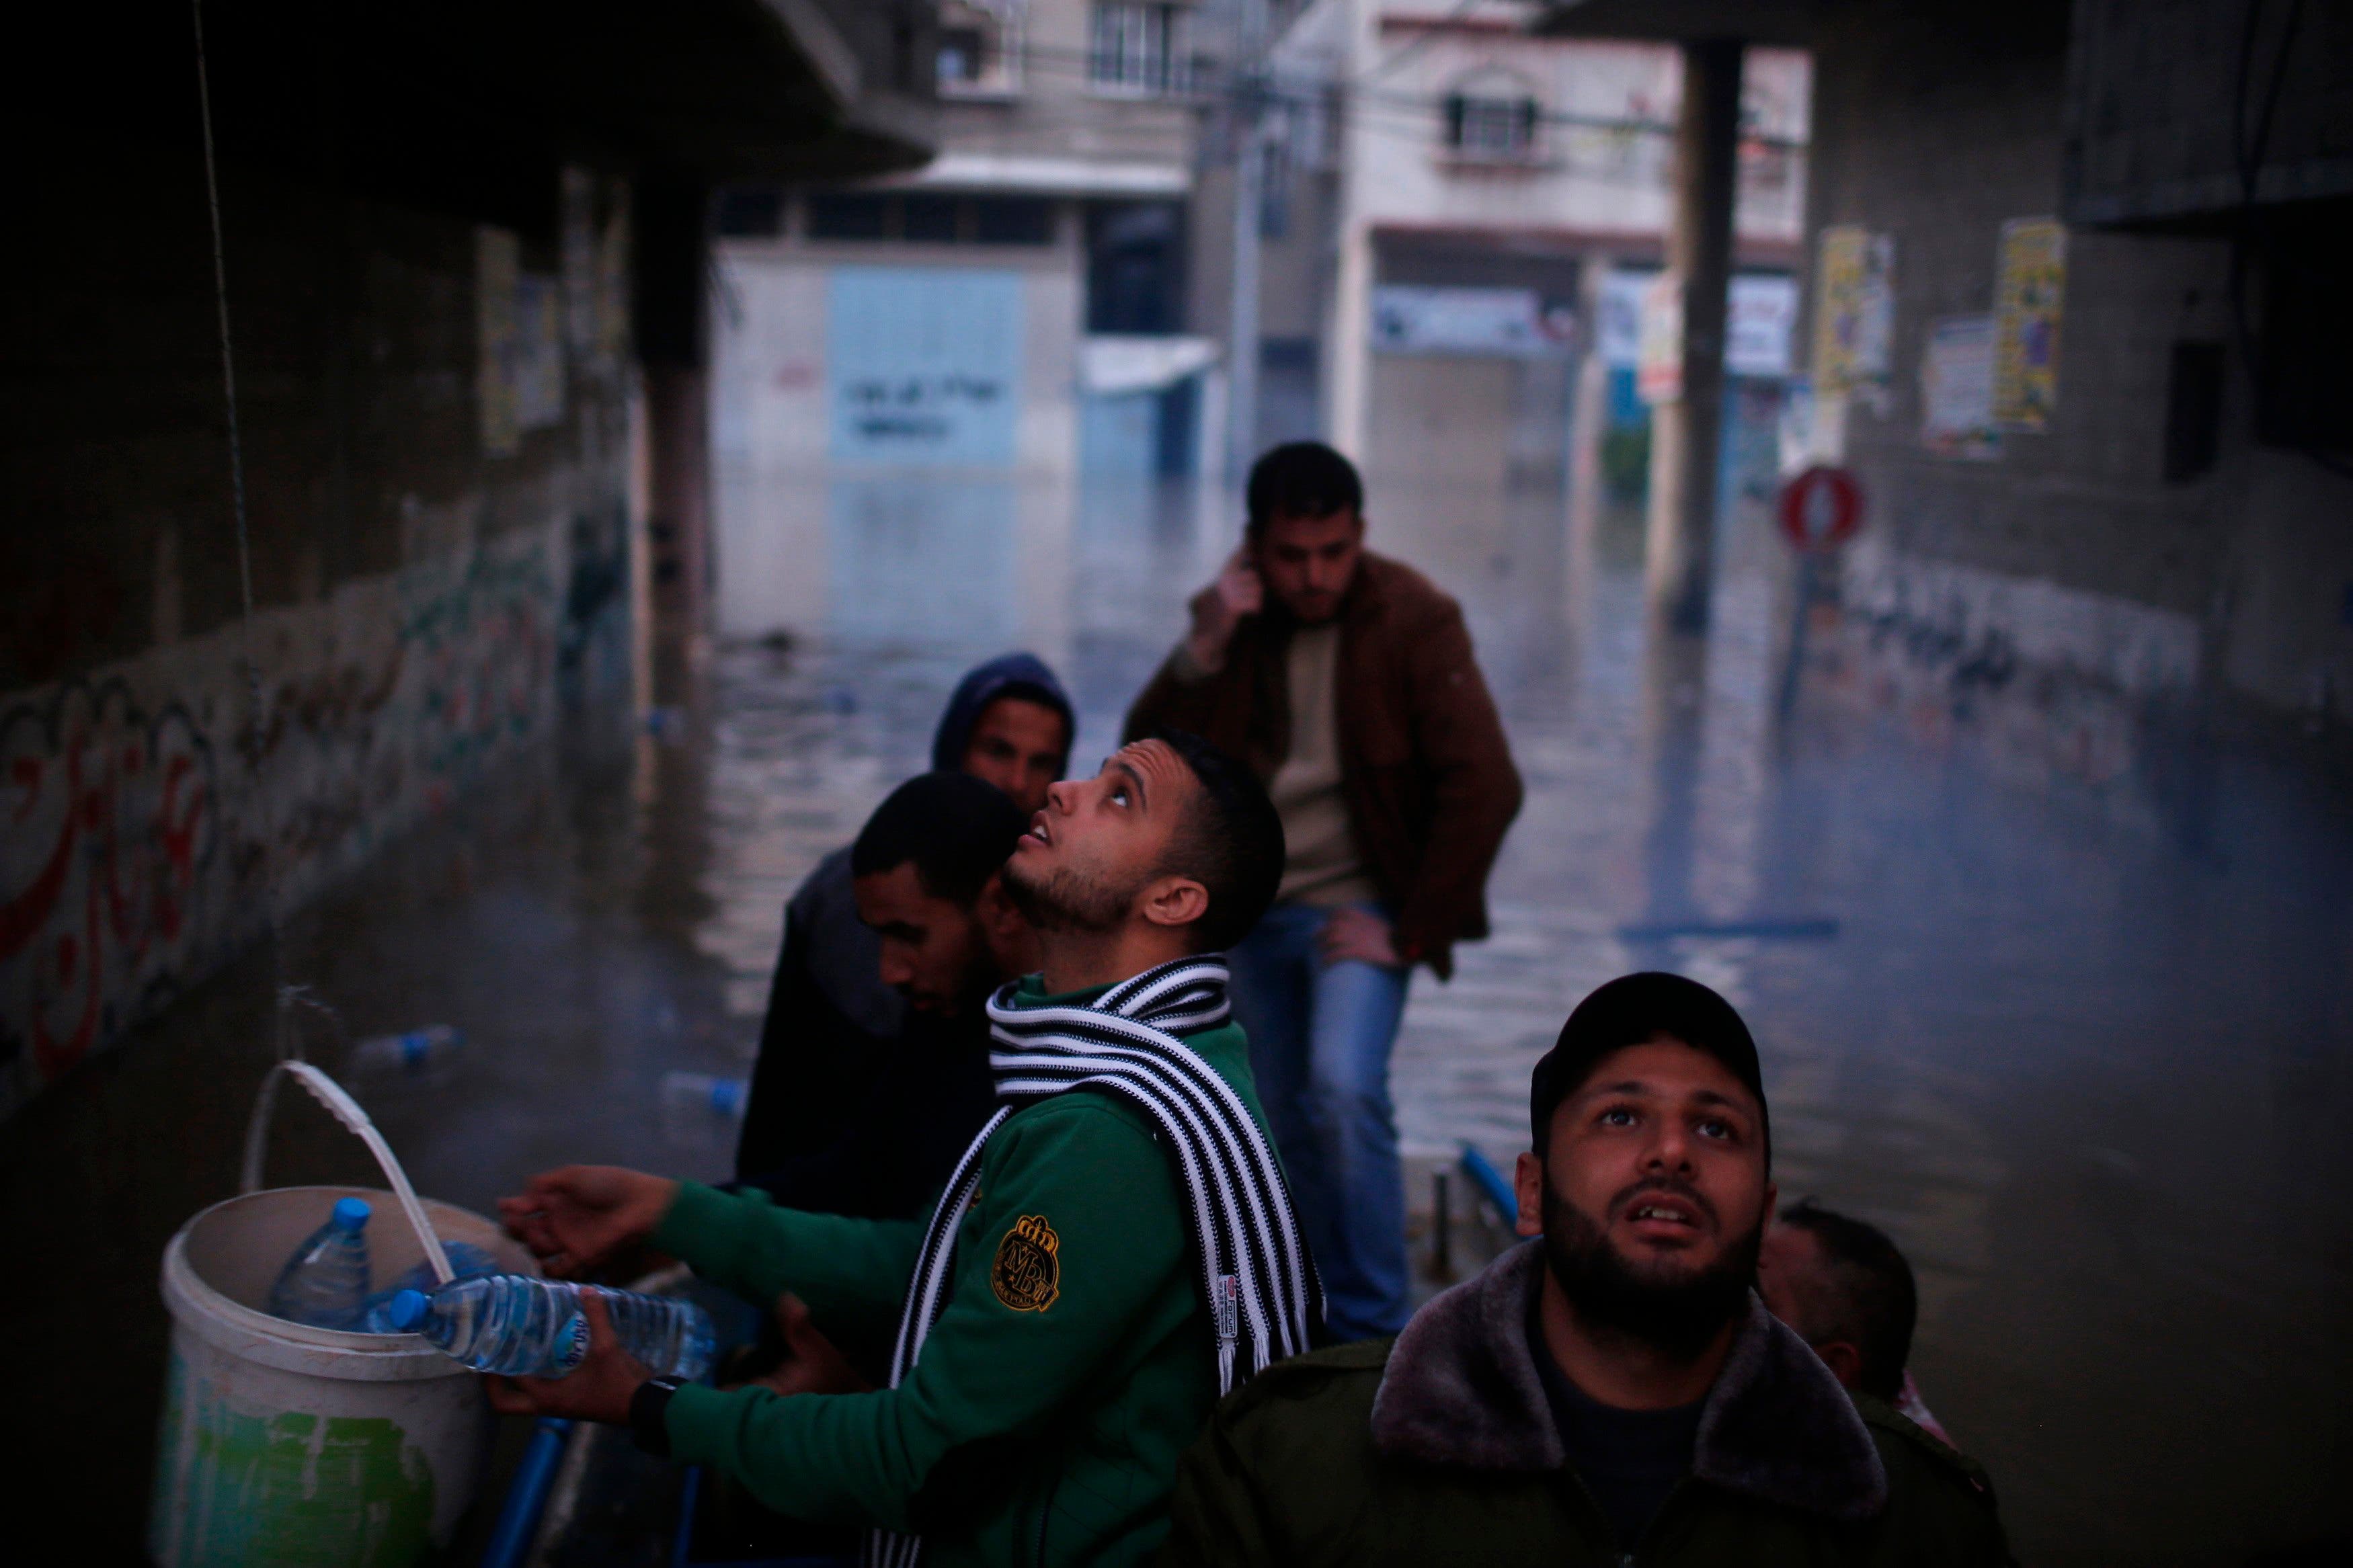 Flash flooding in Gaza